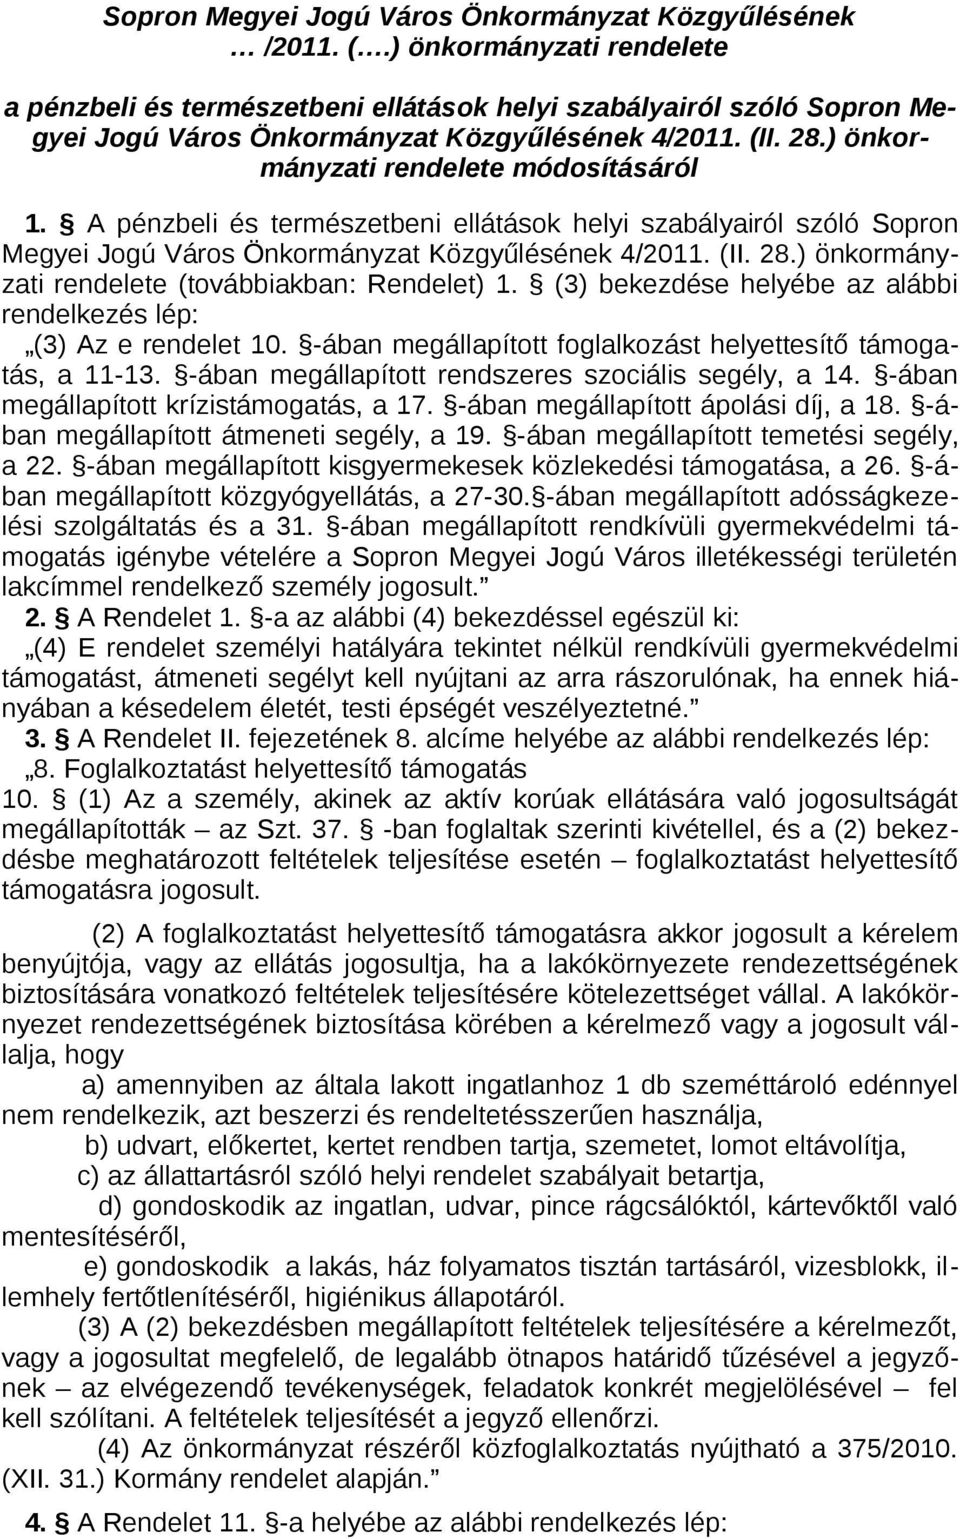 A pénzbeli és természetbeni ellátások helyi szabályairól szóló Sopron Megyei Jogú Város Önkormányzat Közgyűlésének 4/2011. (II. 28.) önkormányzati rendelete (továbbiakban: Rendelet) 1.